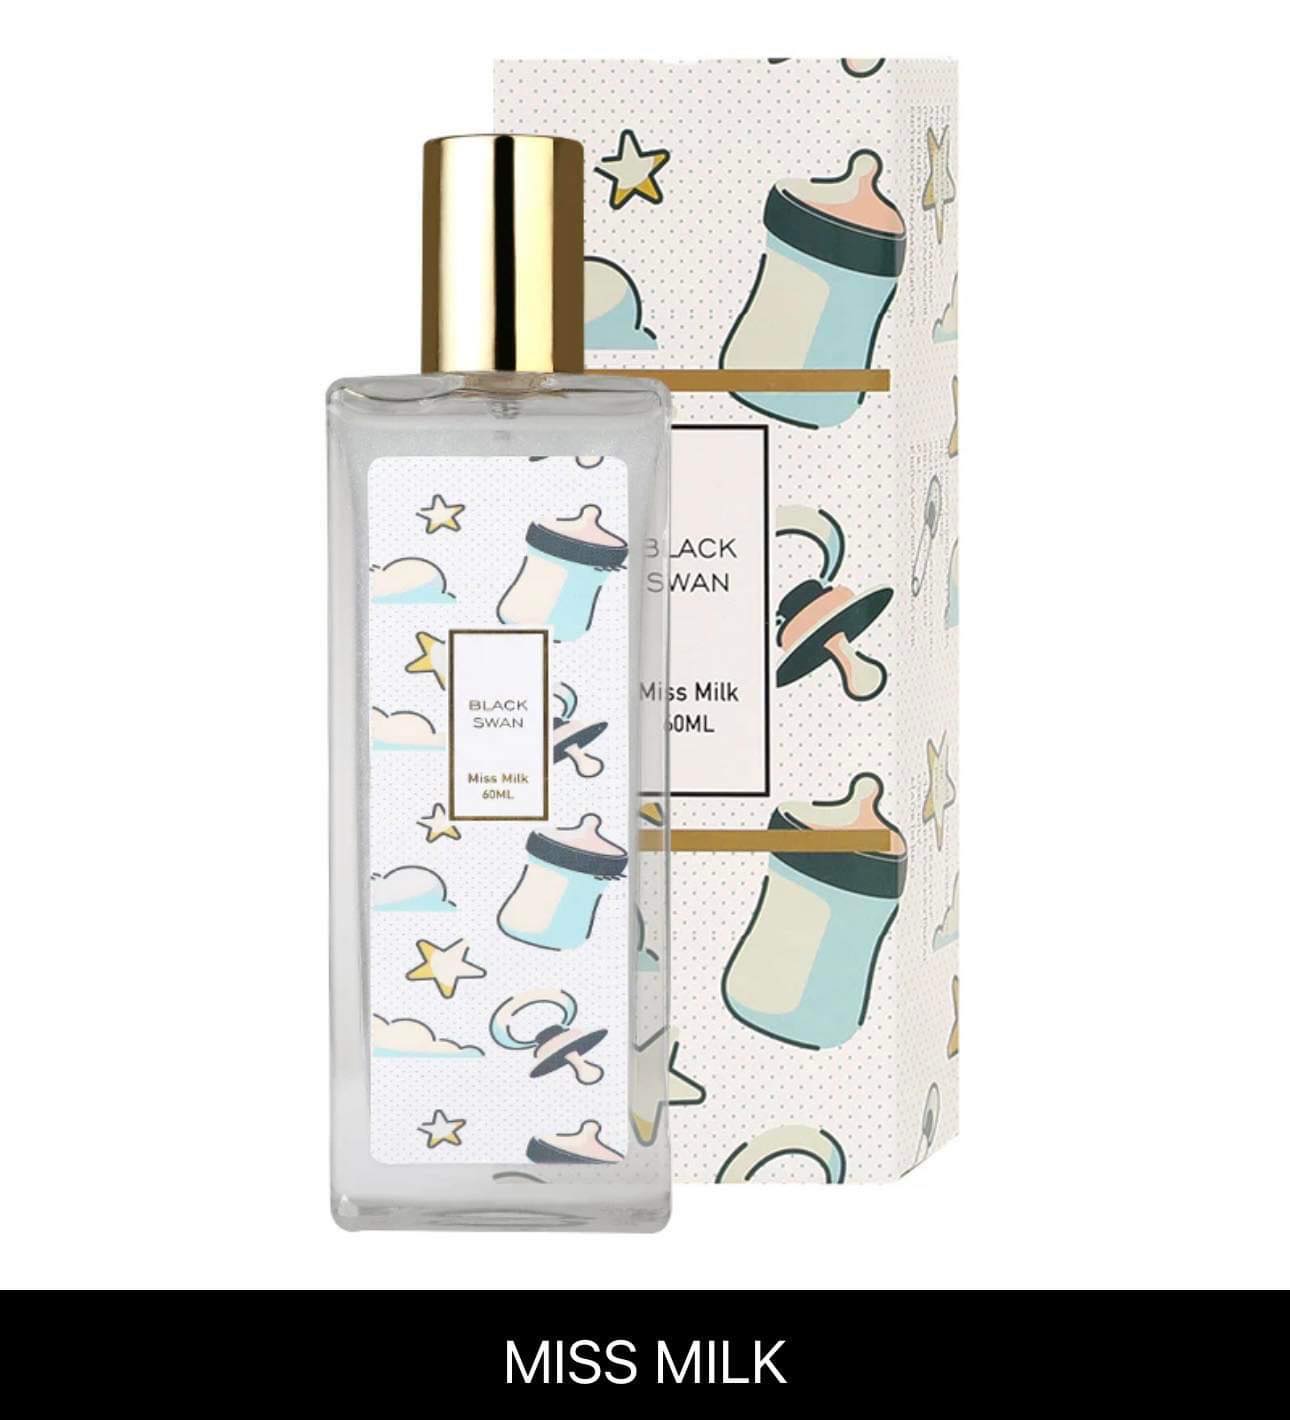 Z16 - BlackSwan Colorful Shimmer Body Mist Perfume 60ml For Men Women gift